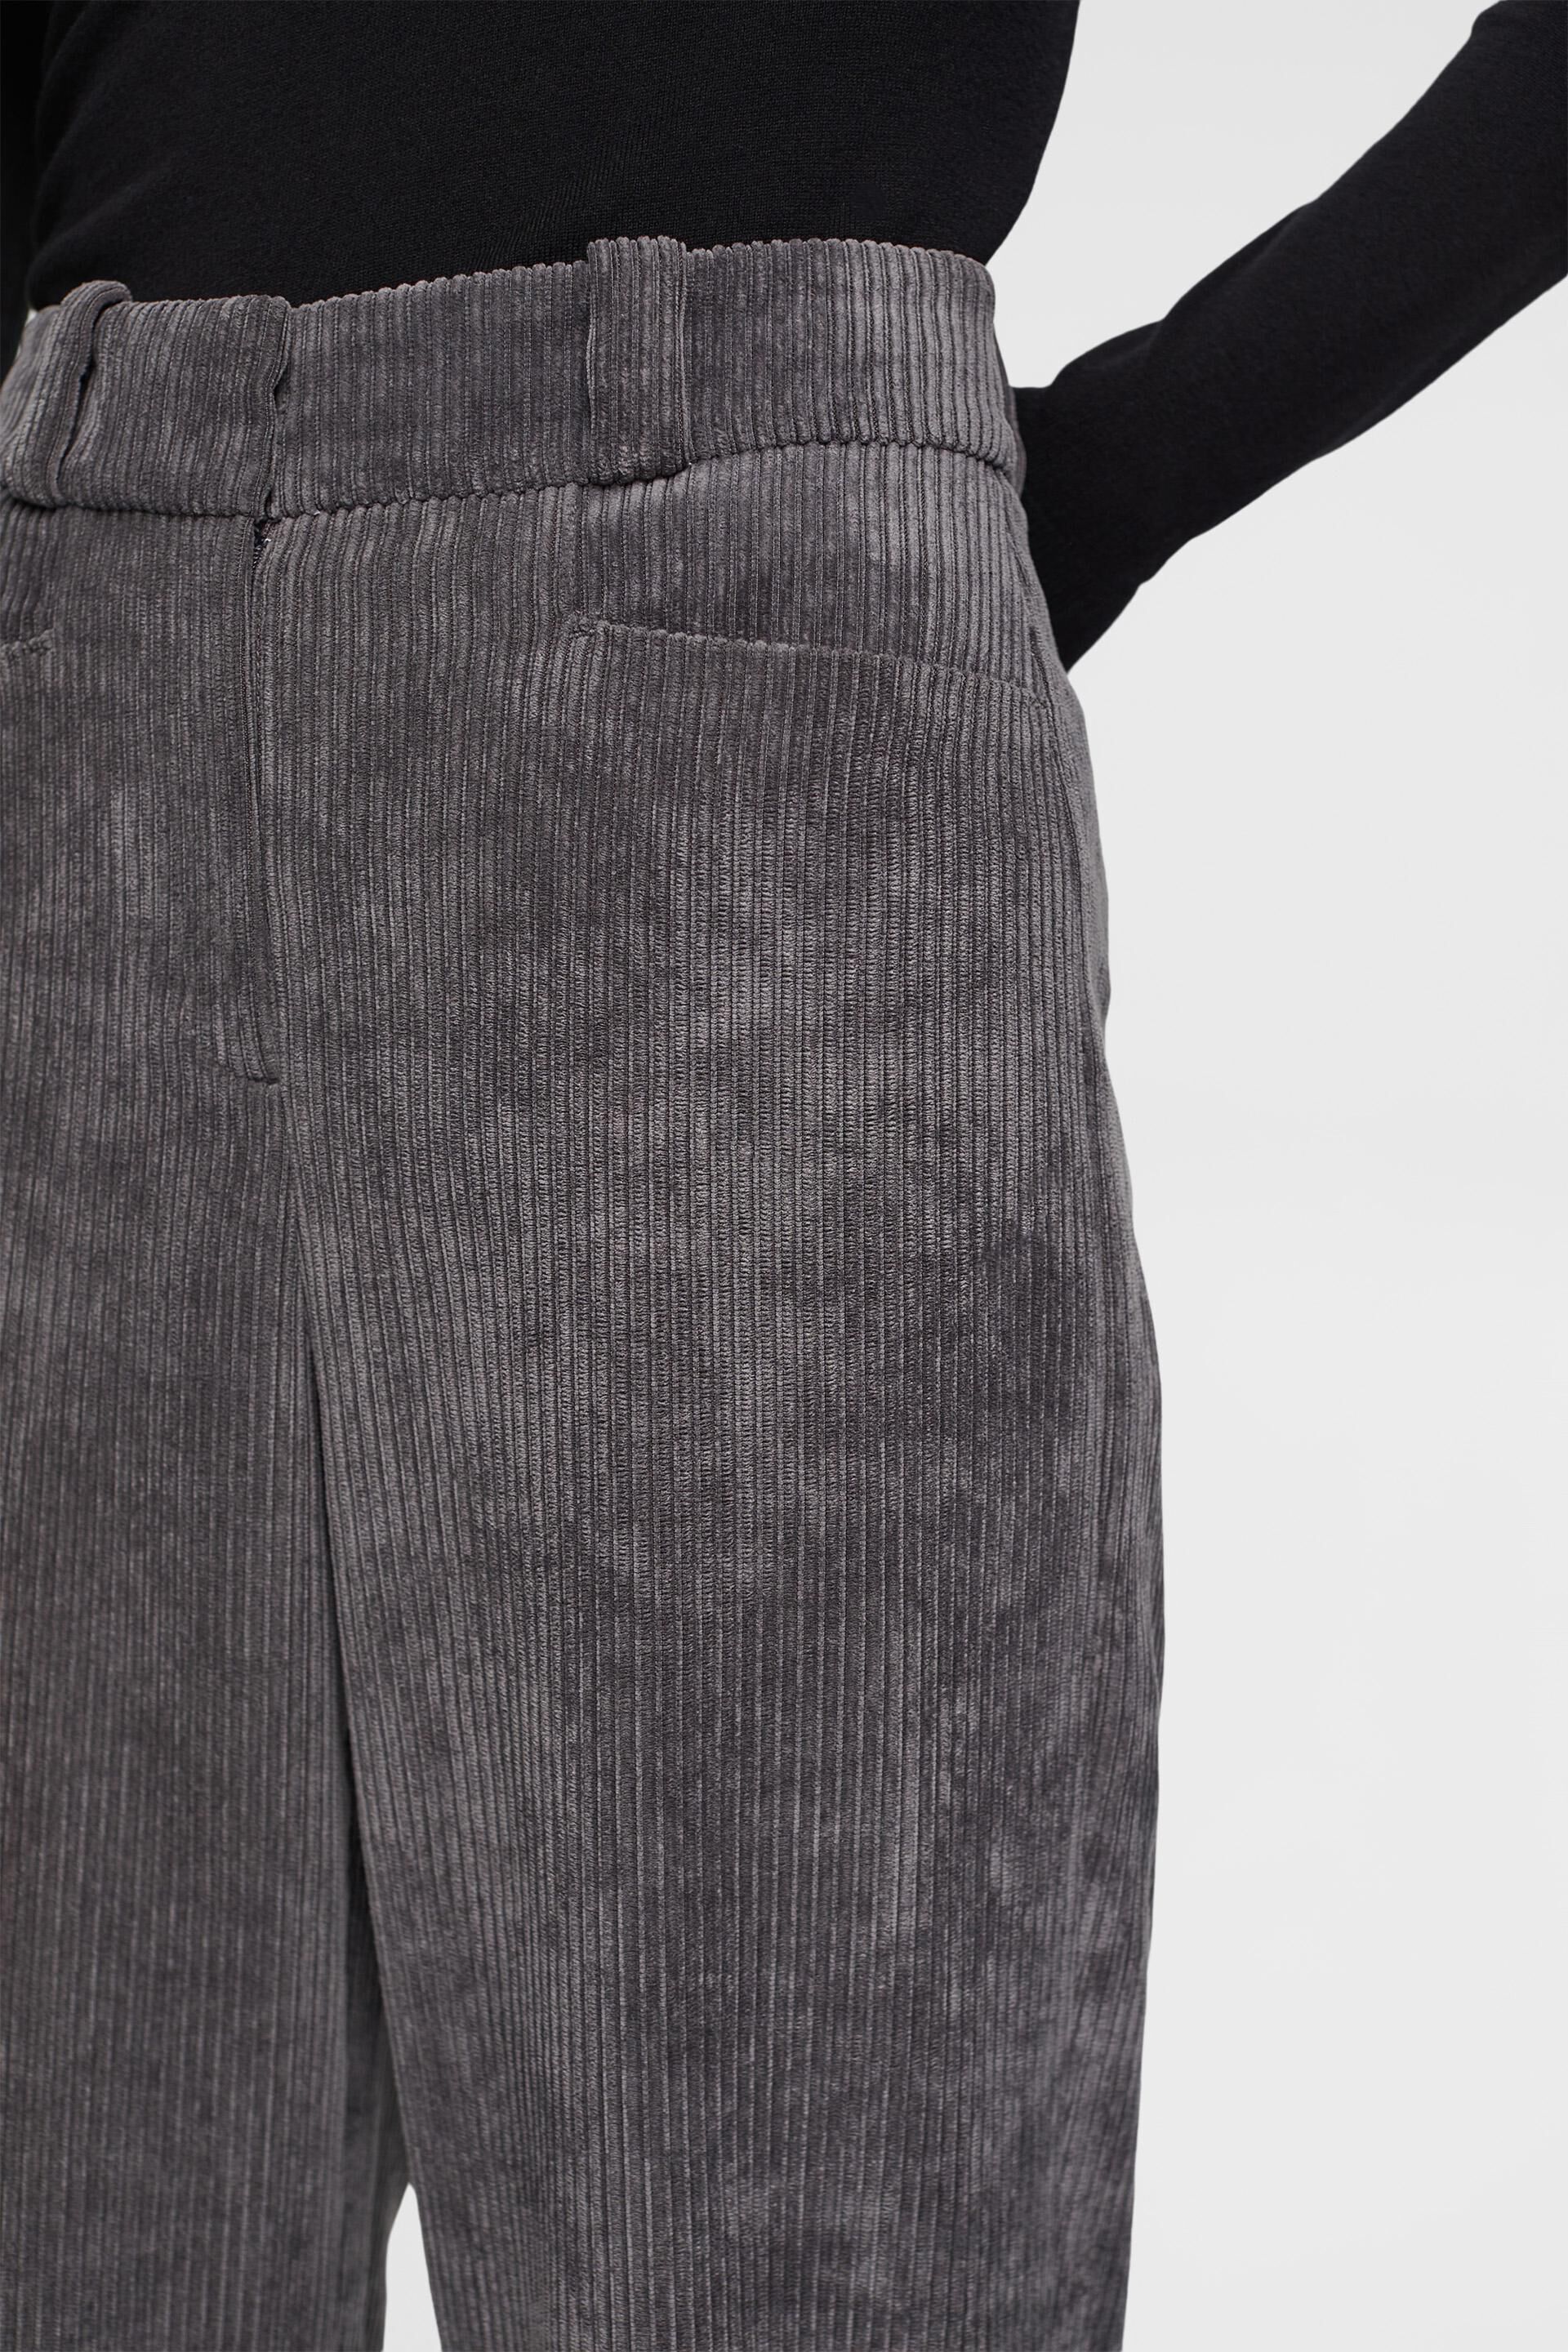 ESPRIT  Midrise corduroy trousers at our online shop